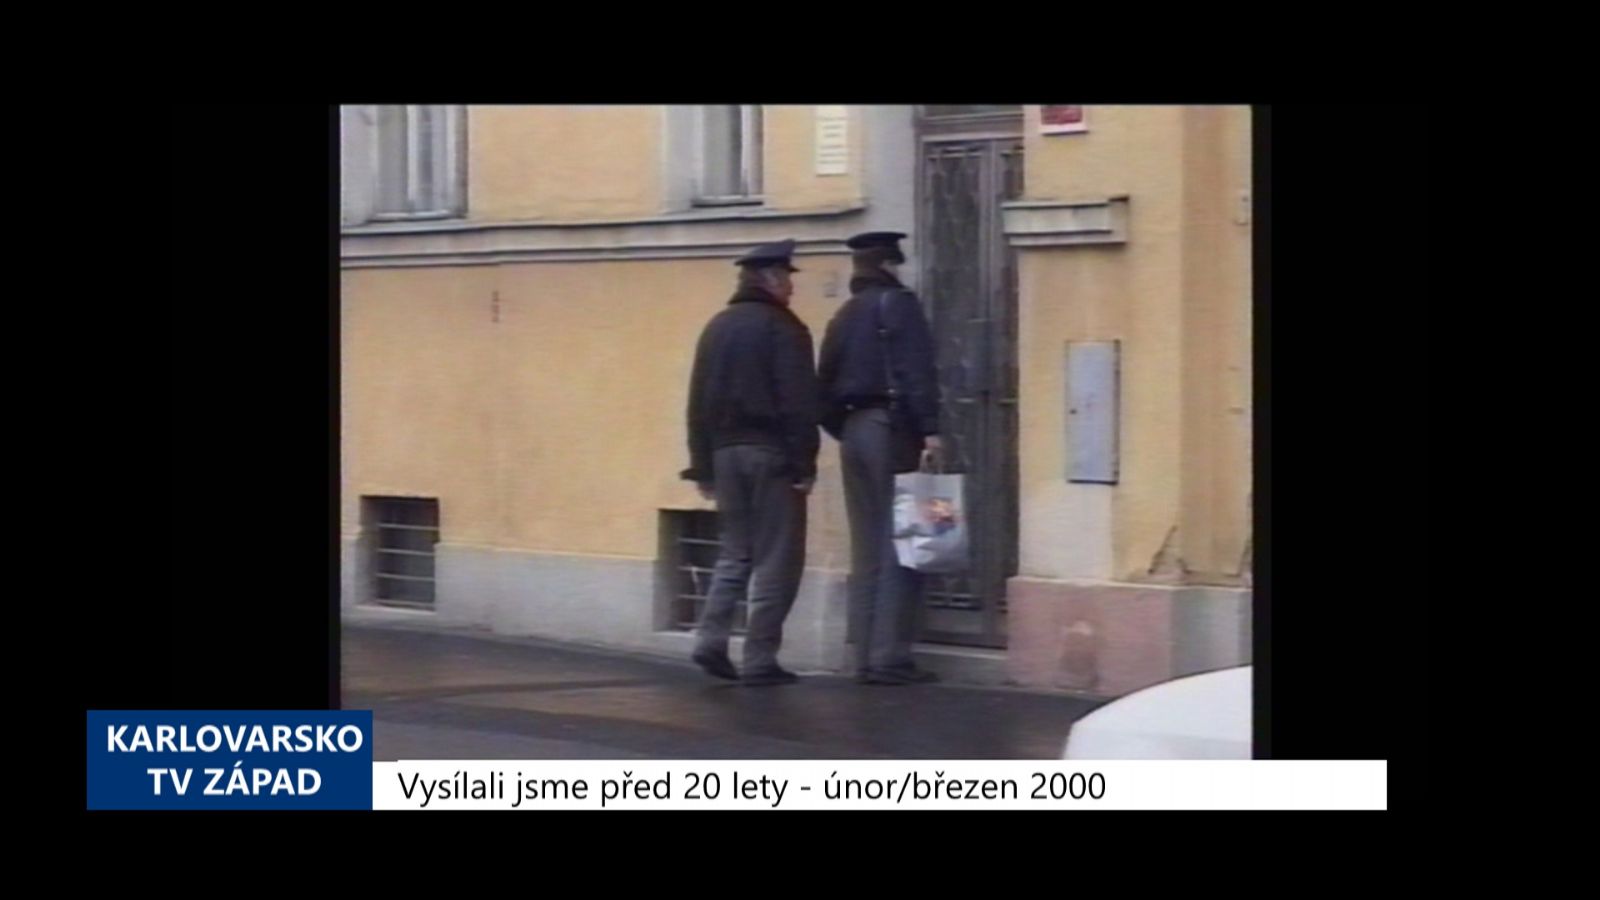 2000 – Františkovy Lázně: S nožem v ruce vyhrožoval majitelce bytu (TV Západ)